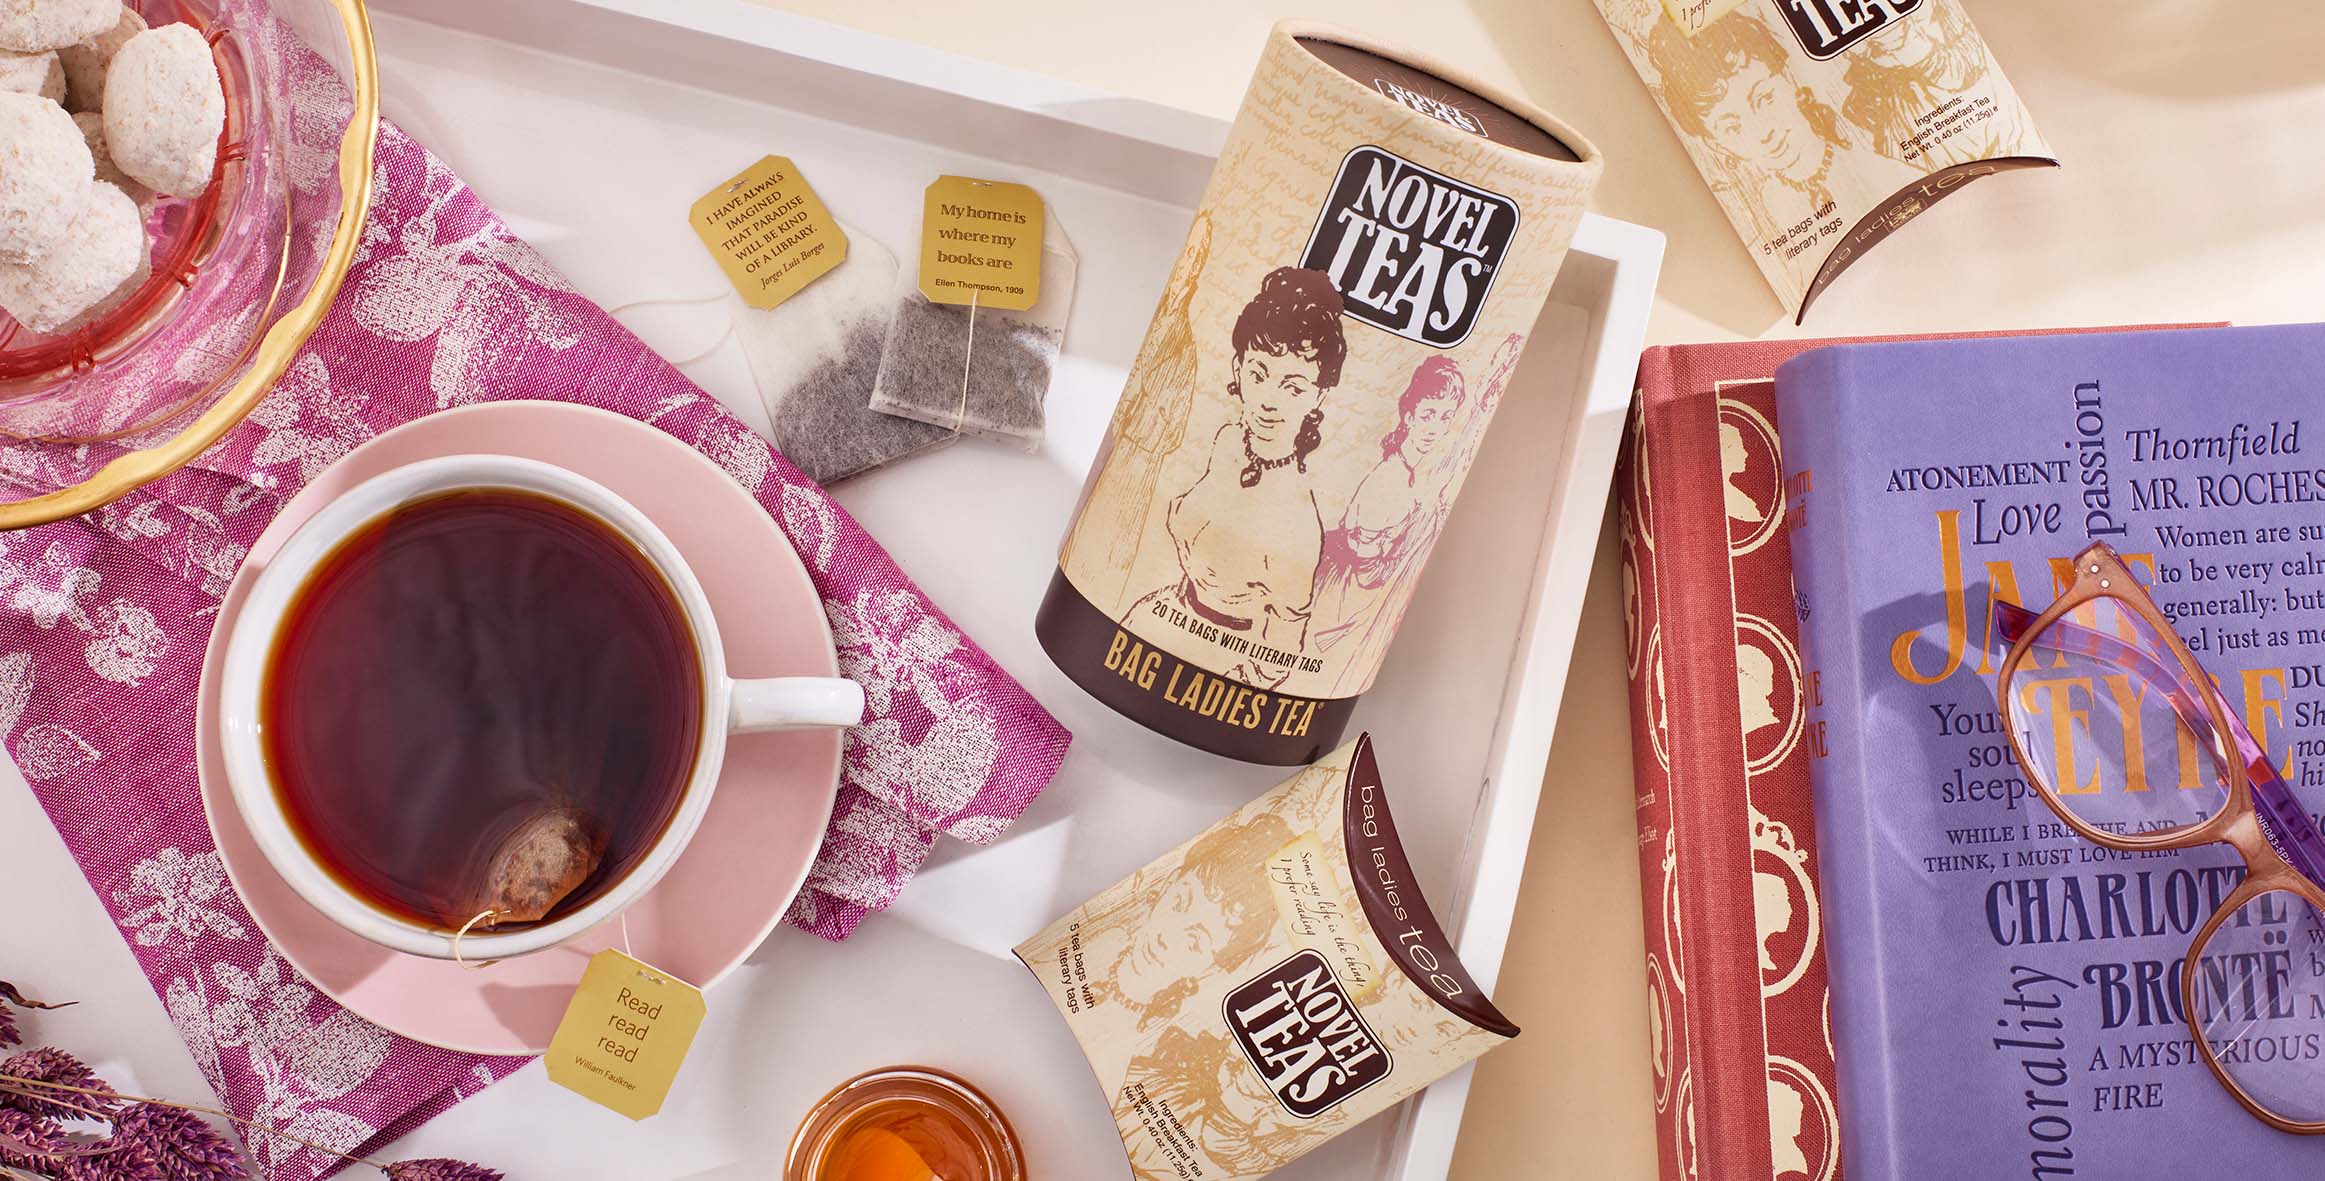 Novel Teas | Bag Ladies Tea